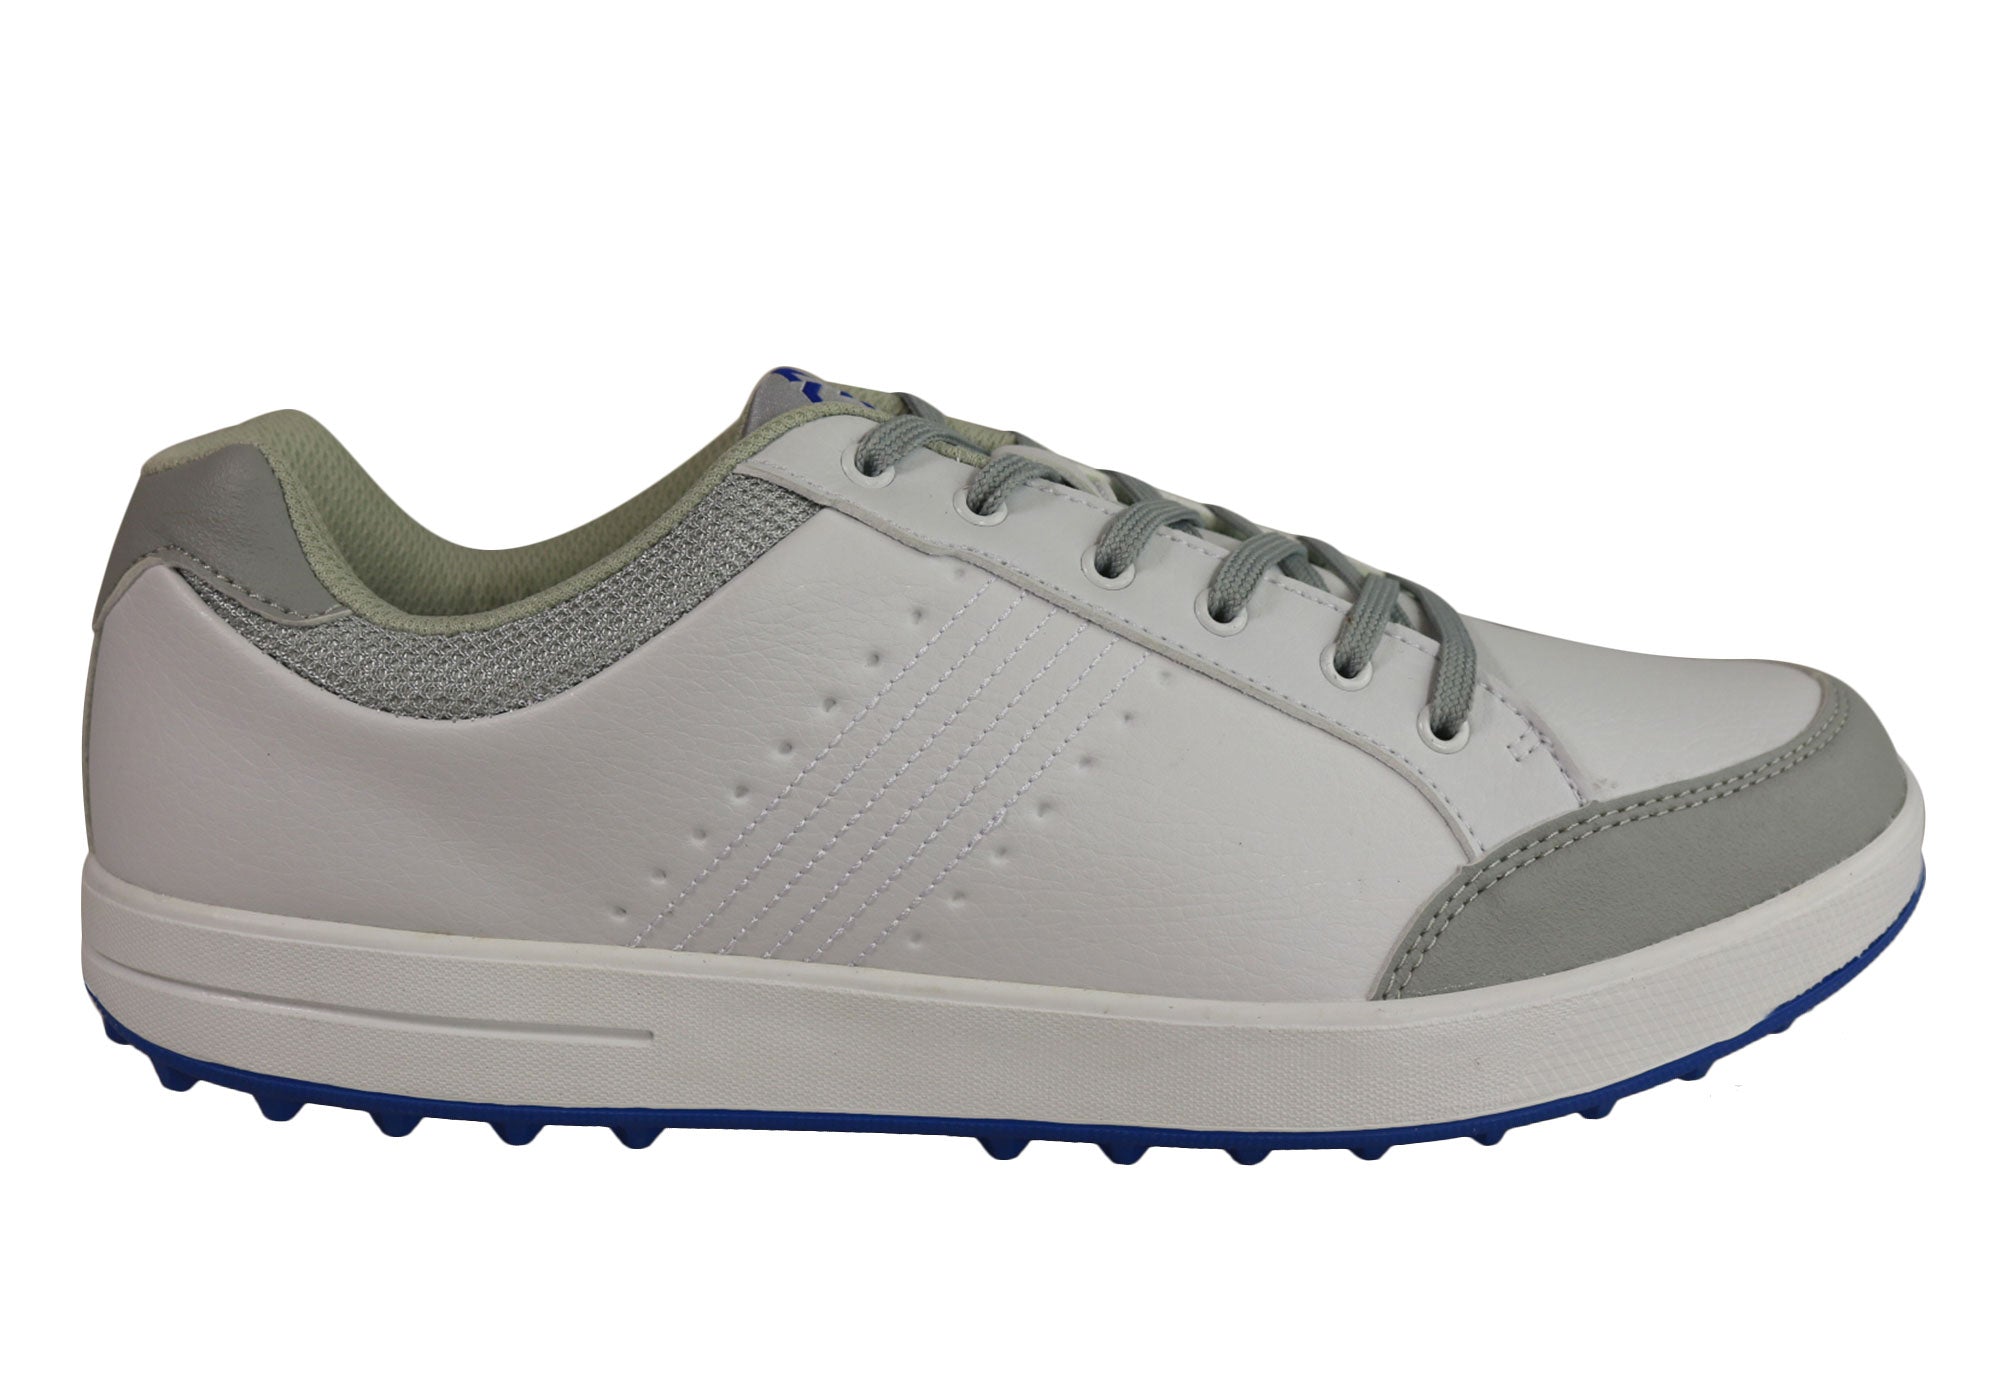 niblick golf shoes